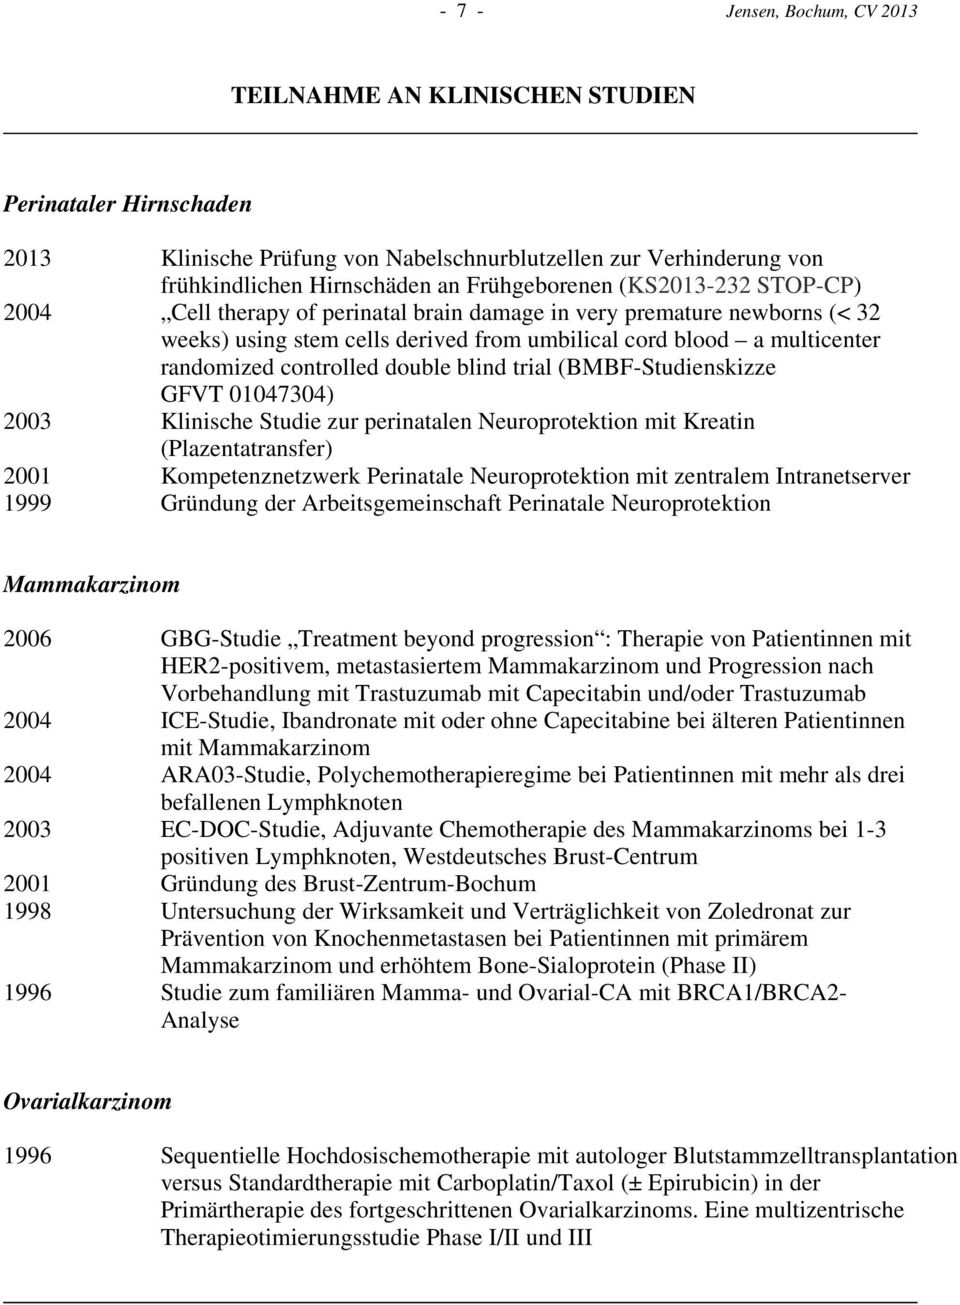 blind trial (BMBF-Studienskizze GFVT 01047304) 2003 Klinische Studie zur perinatalen Neuroprotektion mit Kreatin (Plazentatransfer) 2001 Kompetenznetzwerk Perinatale Neuroprotektion mit zentralem